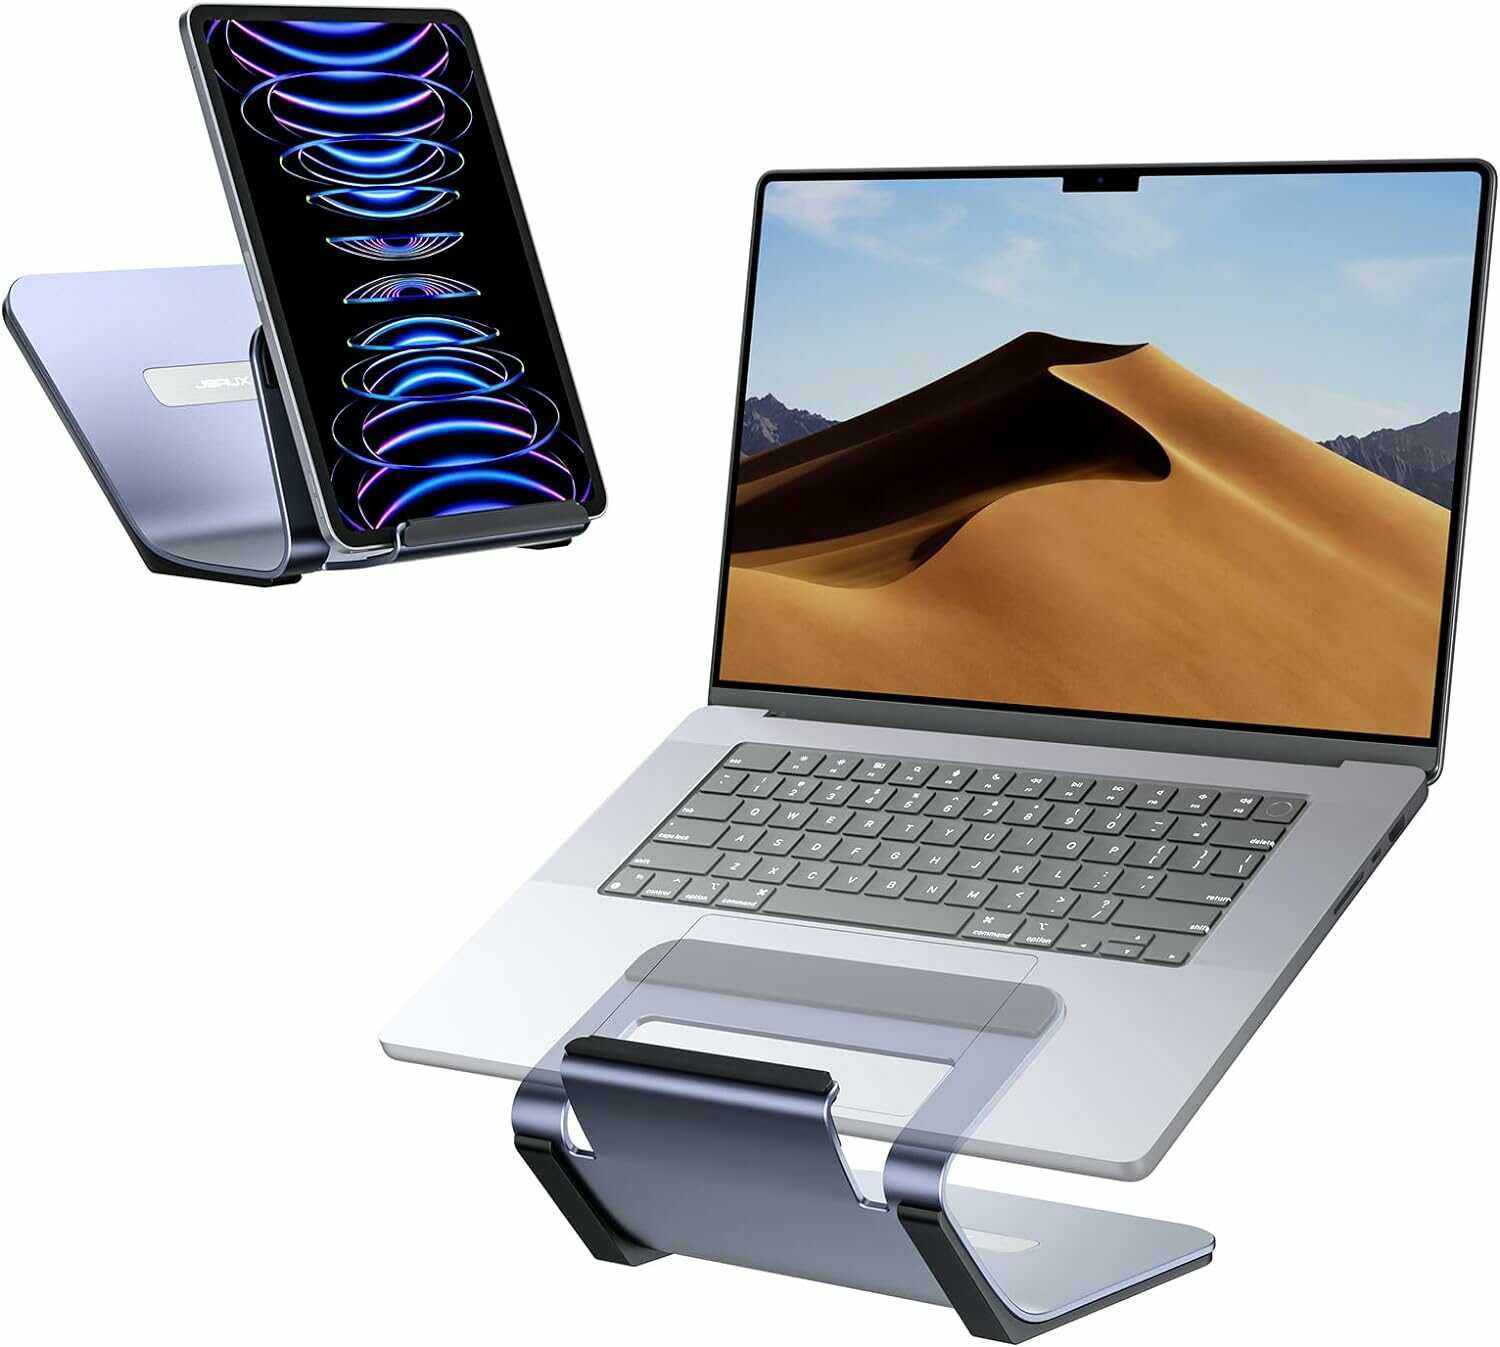 Laptop Ständer – 2 in 1 Computer Erhöhung und Tablet Ständer für 12,49€ statt 24,99€